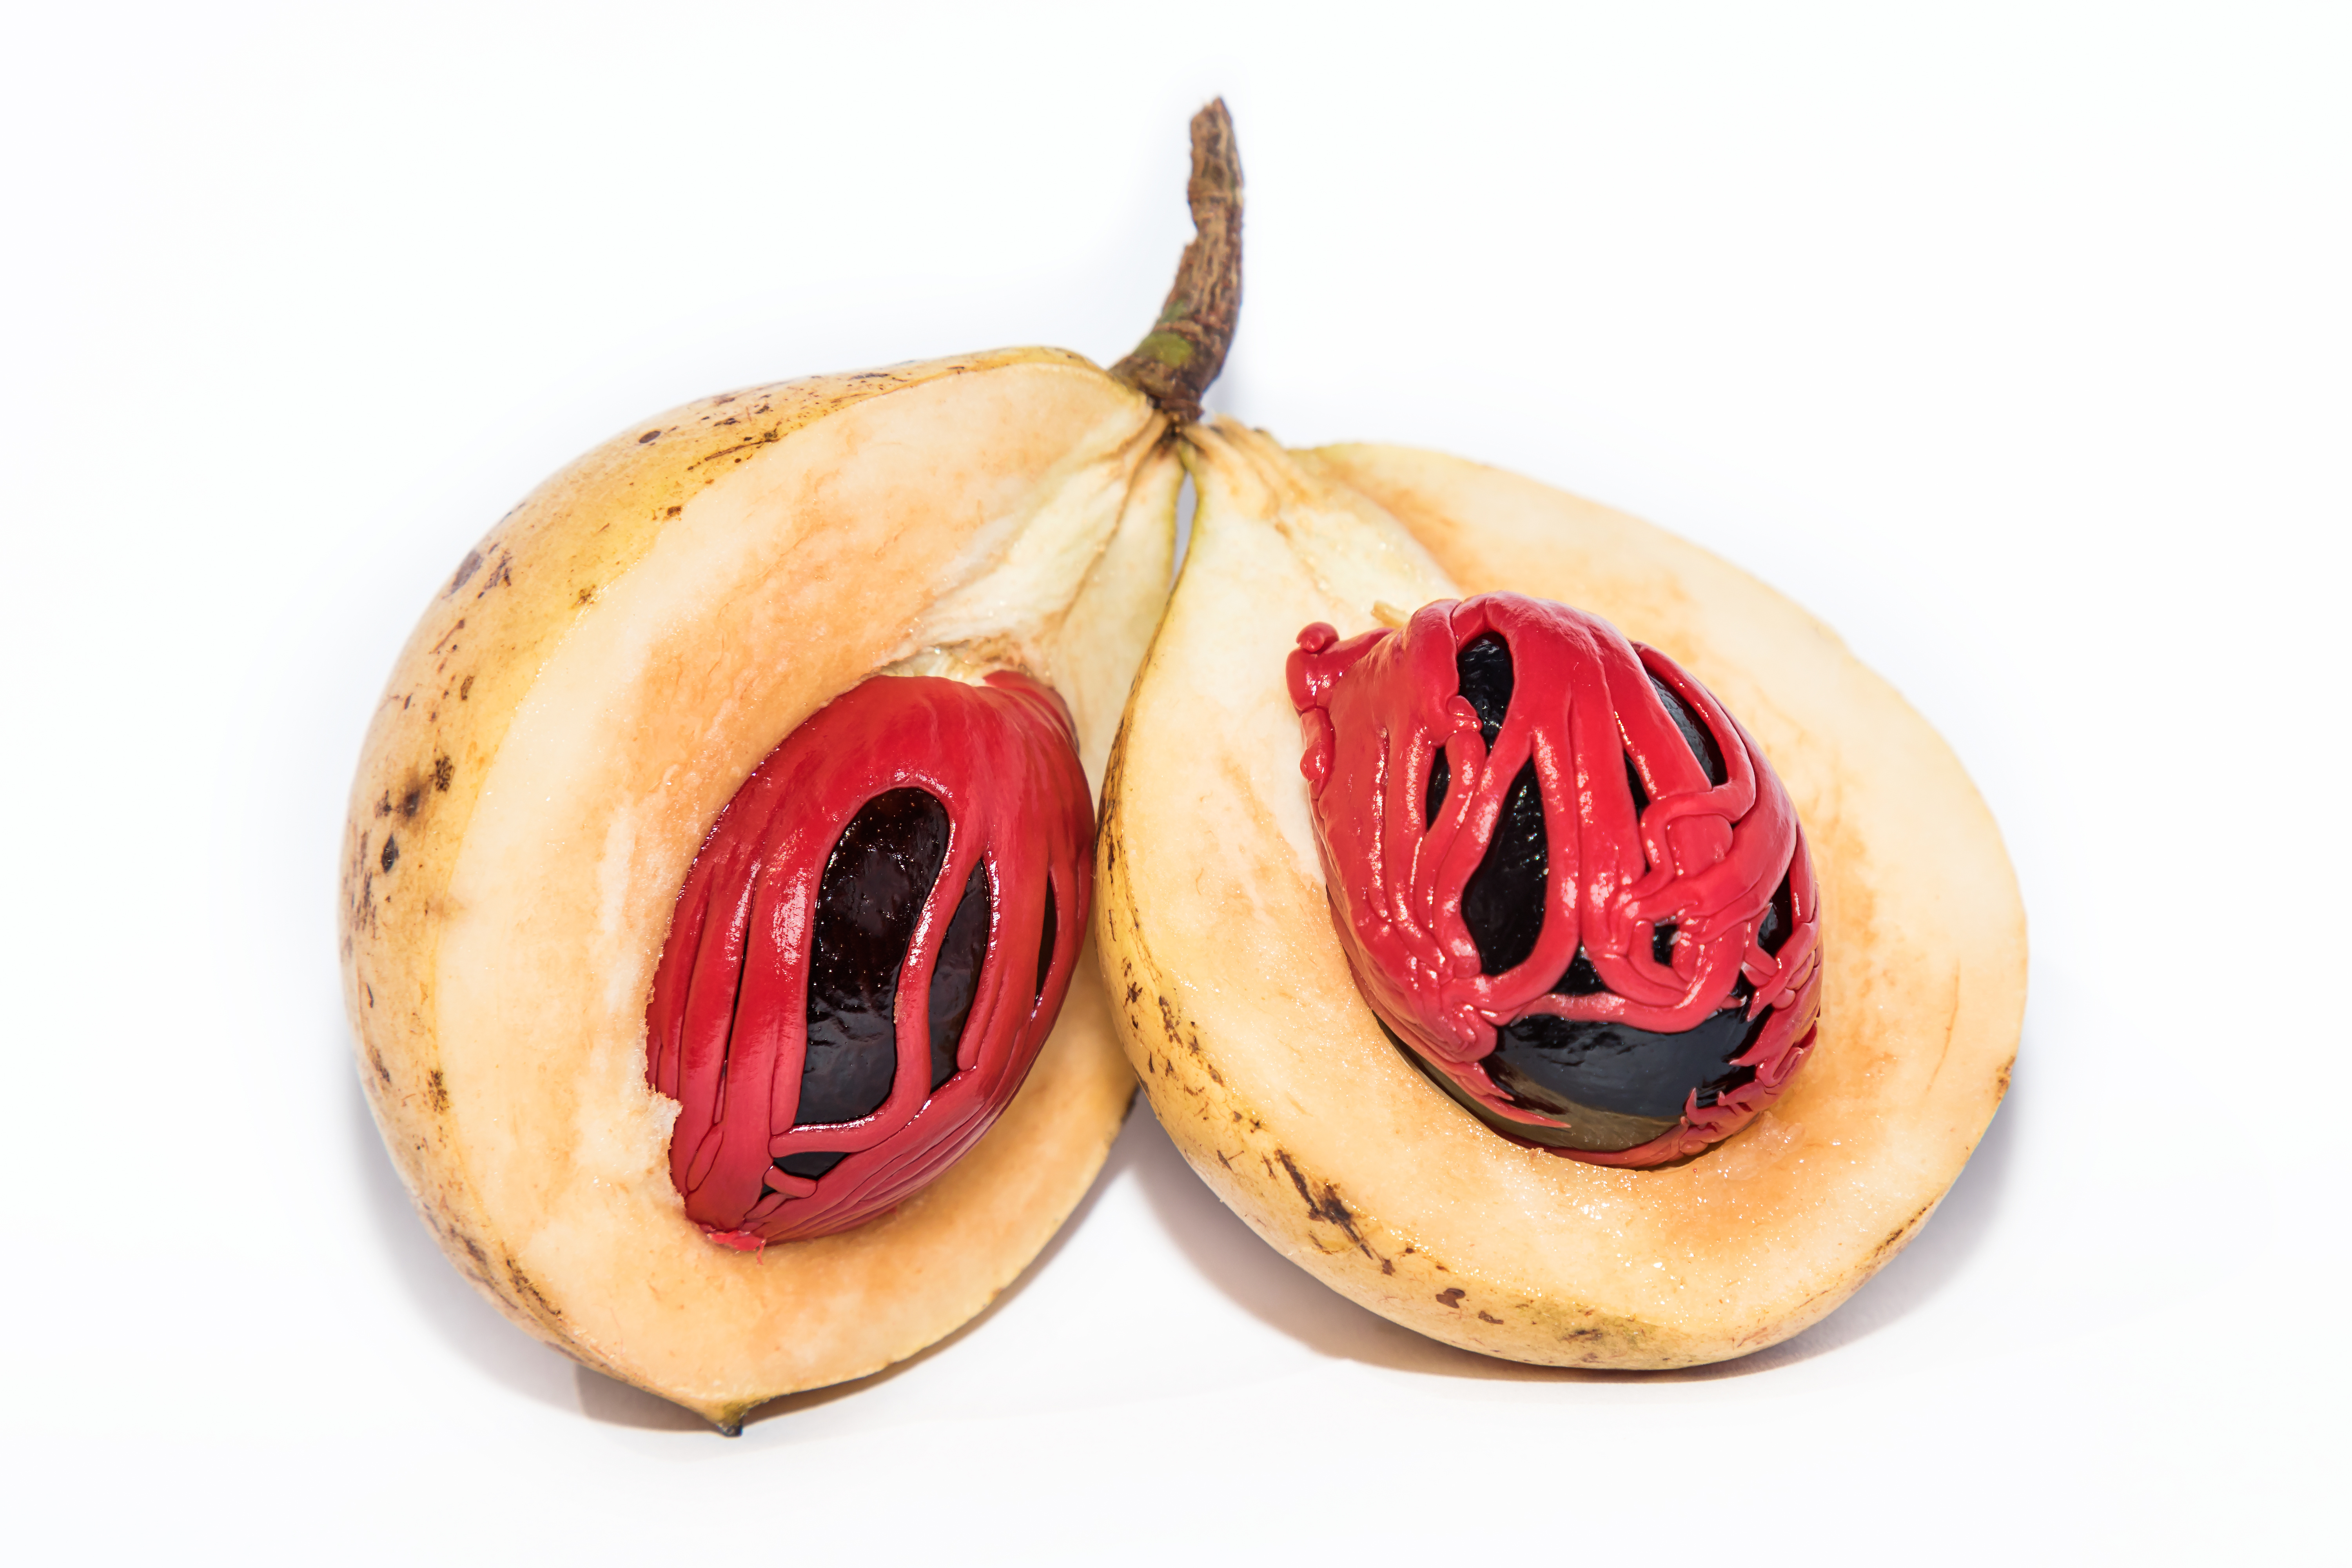 La noix de muscade couramment - Benin Fruits & Fleurs